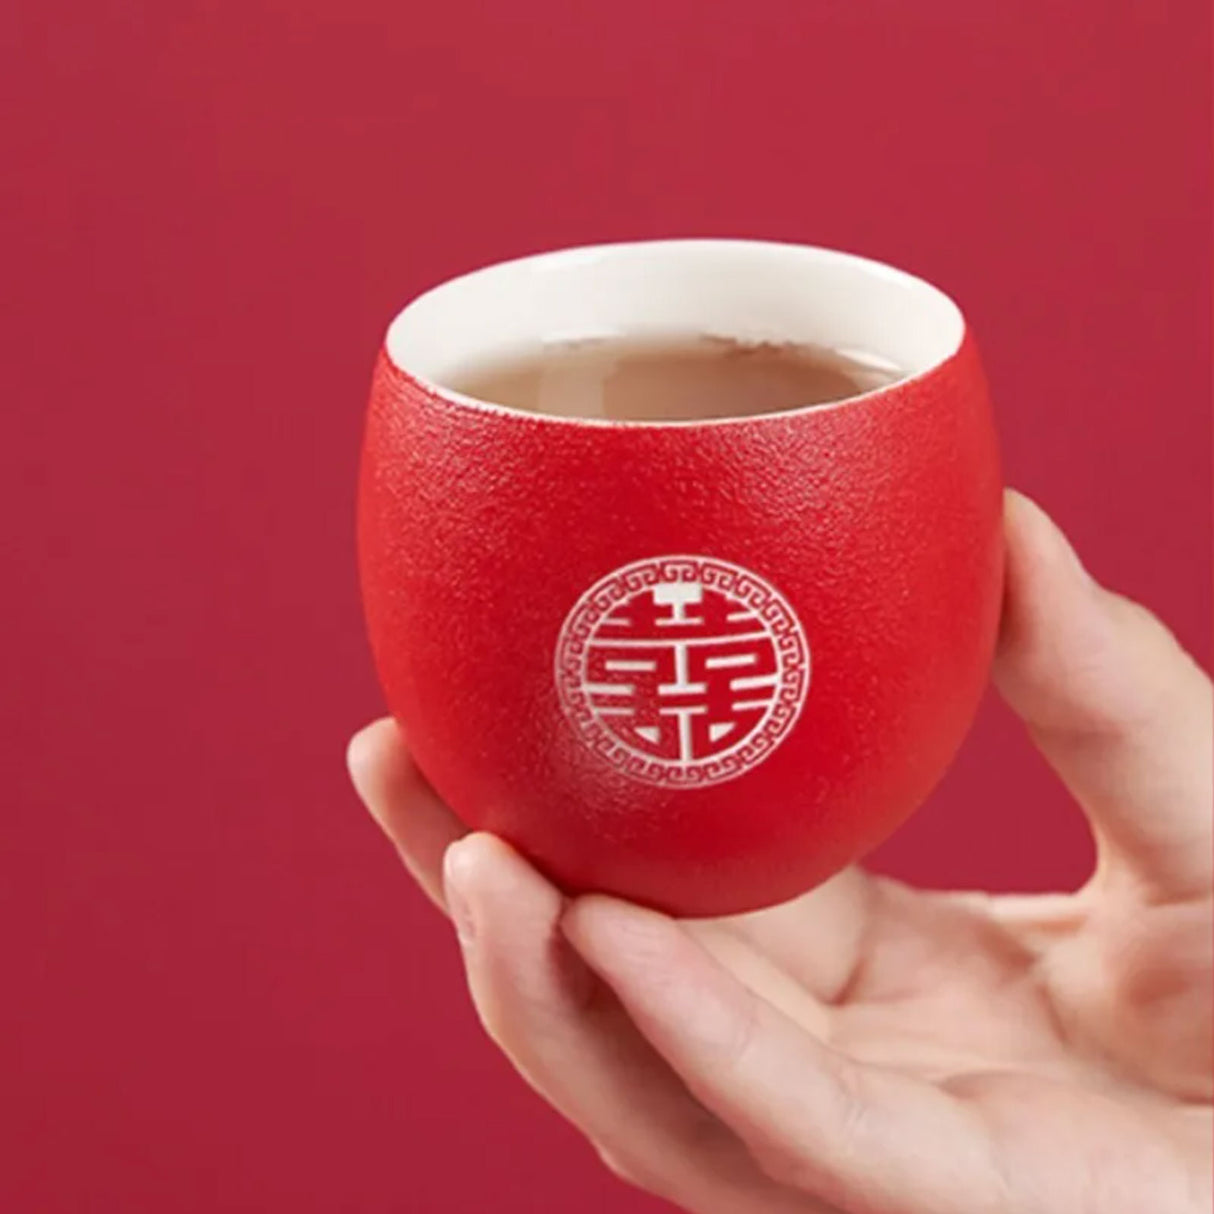 Service à thé japonais rouge en céramique